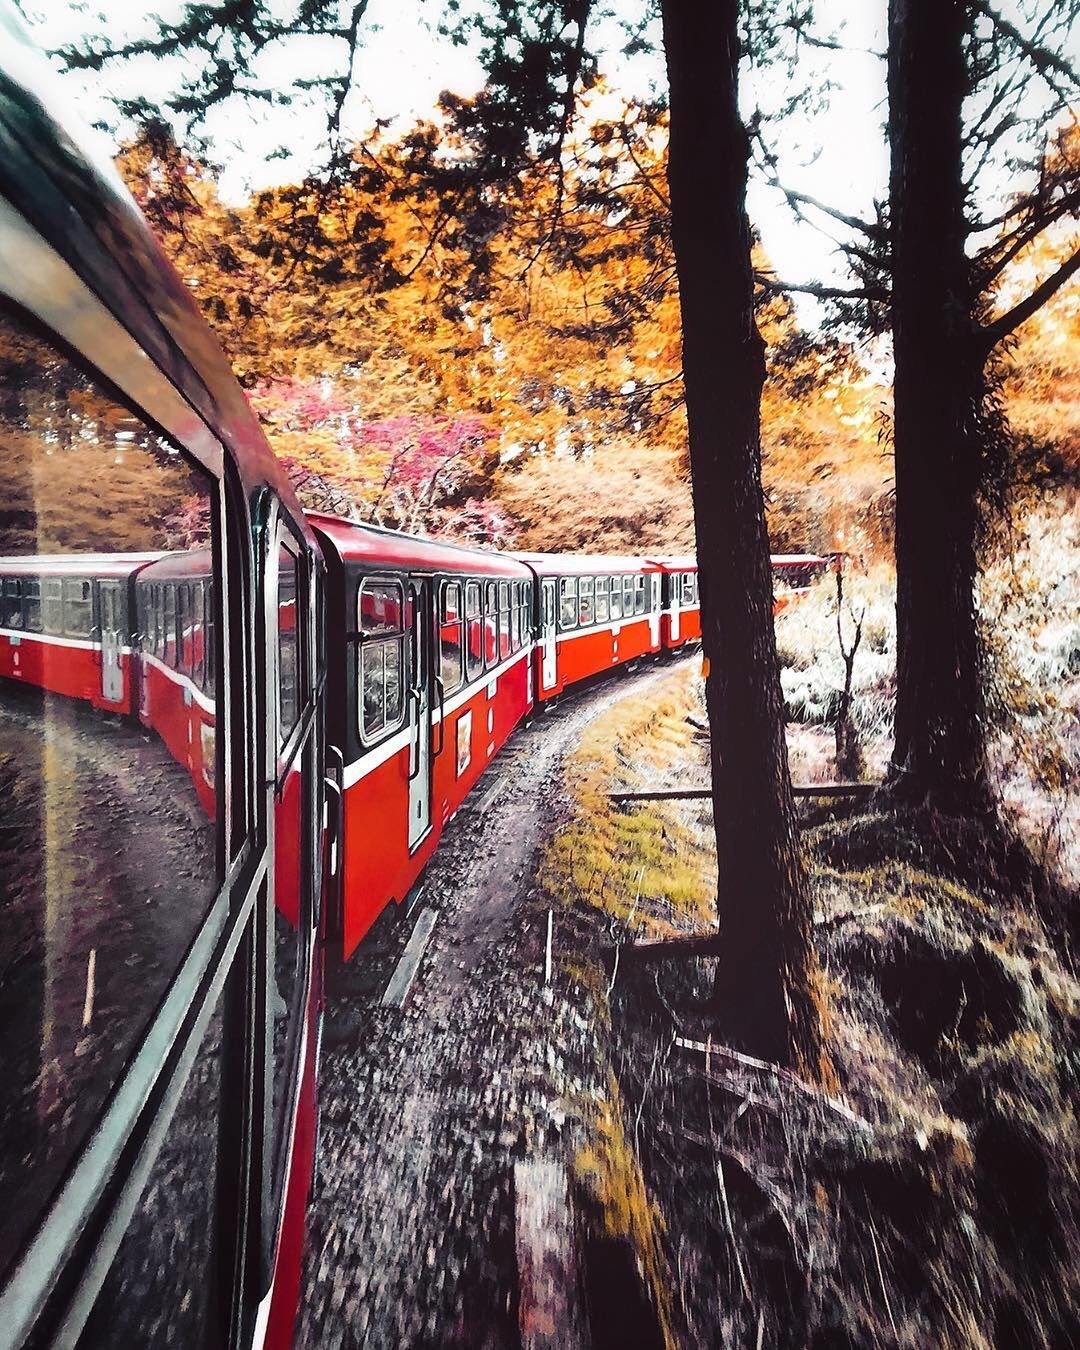 森林火車的窗外美景就是不一樣-感謝 @runaway.c 提供超棒照片- #travelalishan 或 @travelalis...